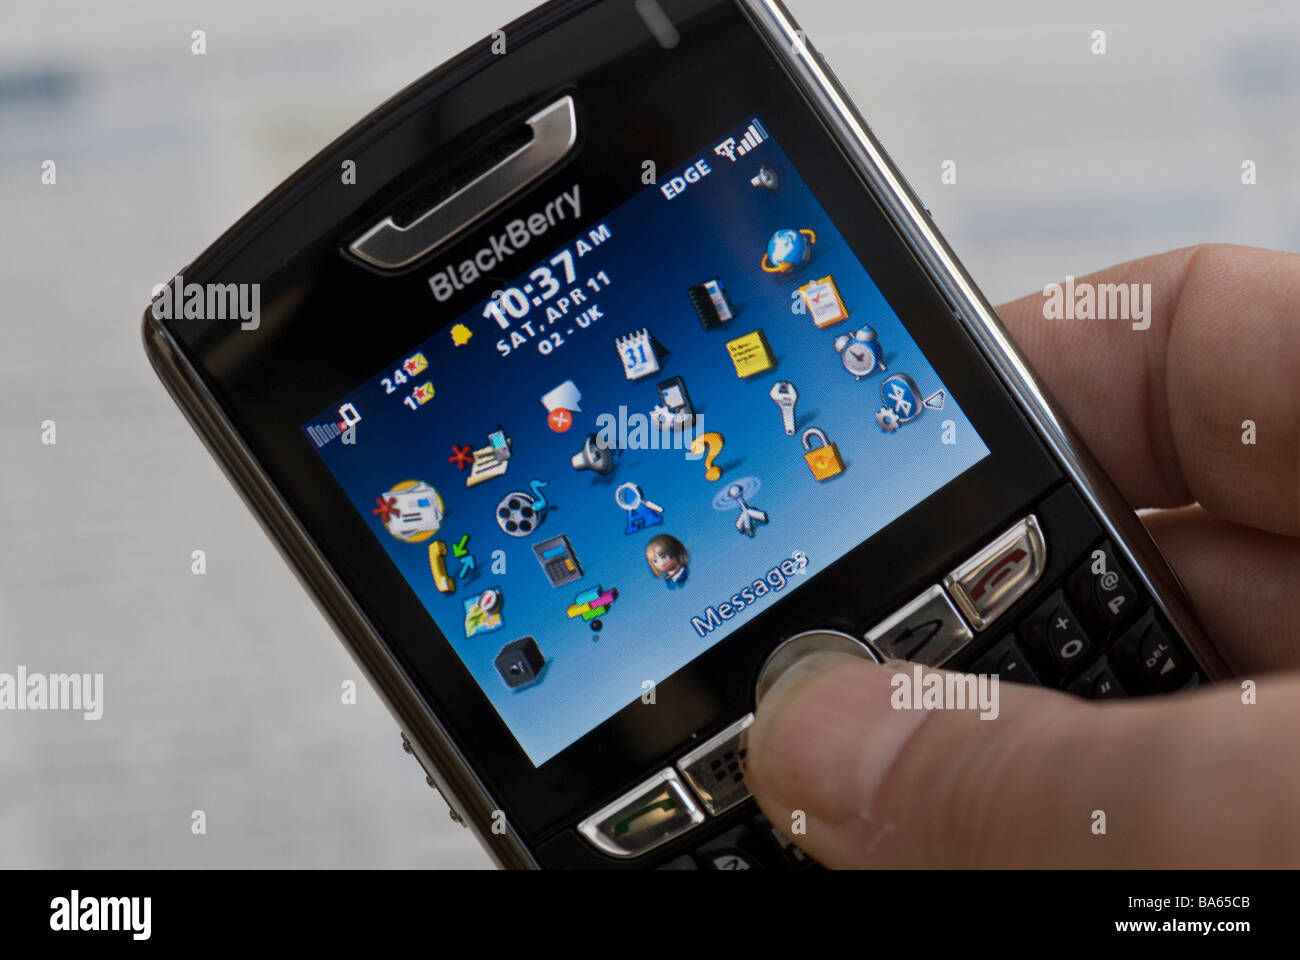 Blackberry Device Stock Photo